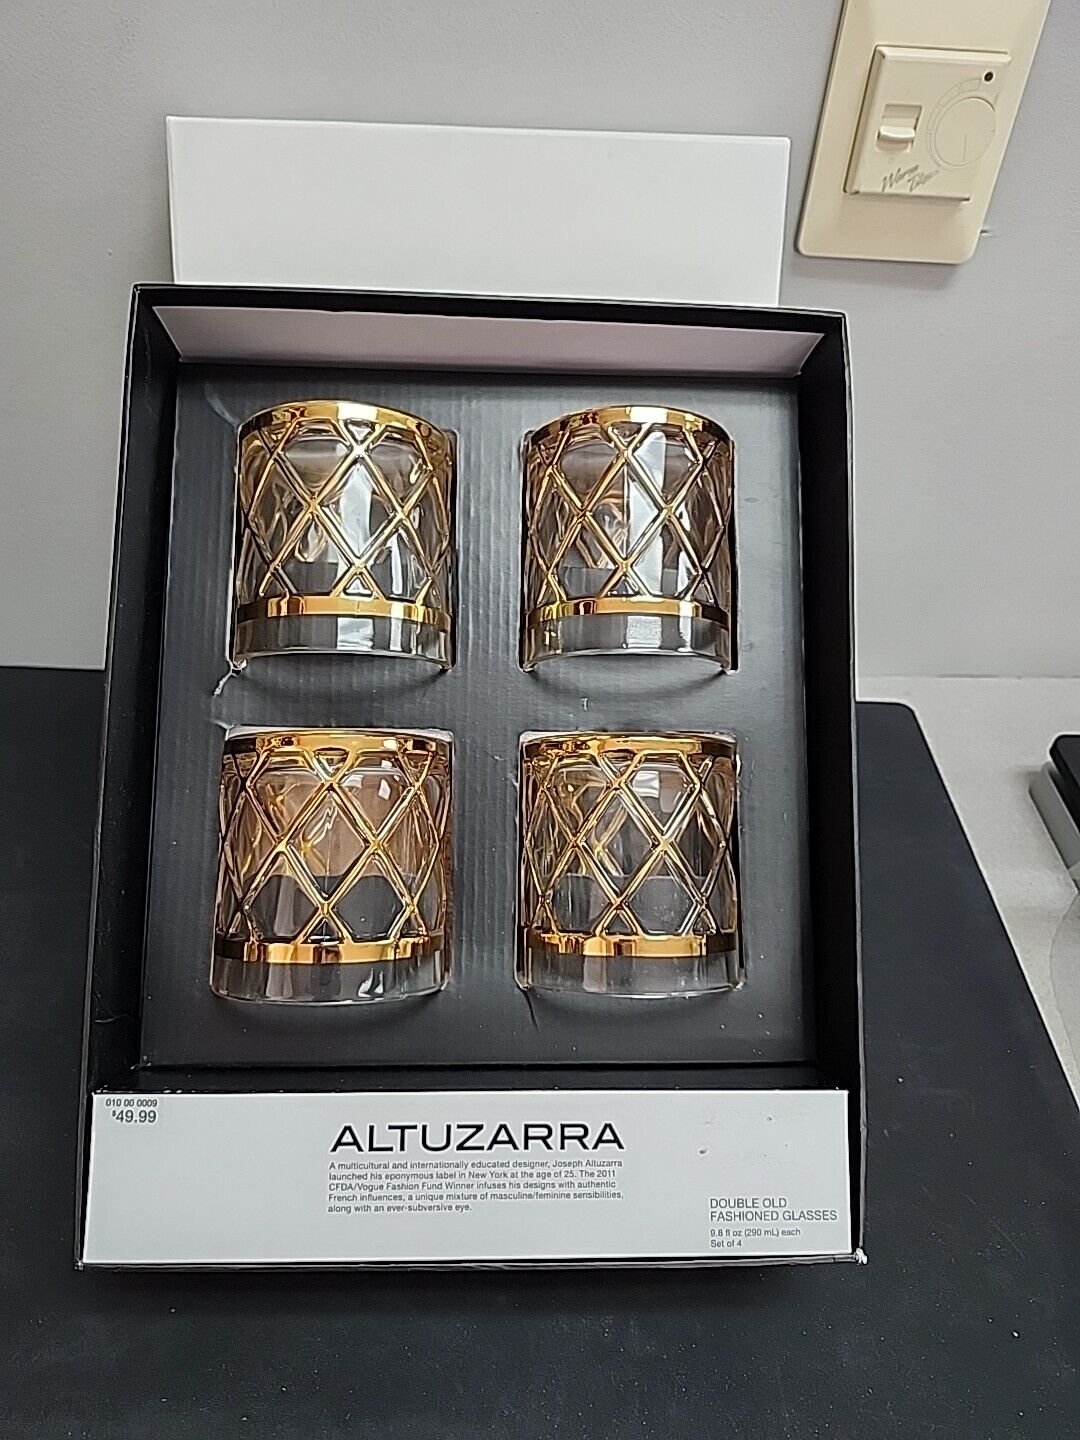 4 Altuzarra Double Old Fashioned Glasses Lattice Design -OPEN BOX